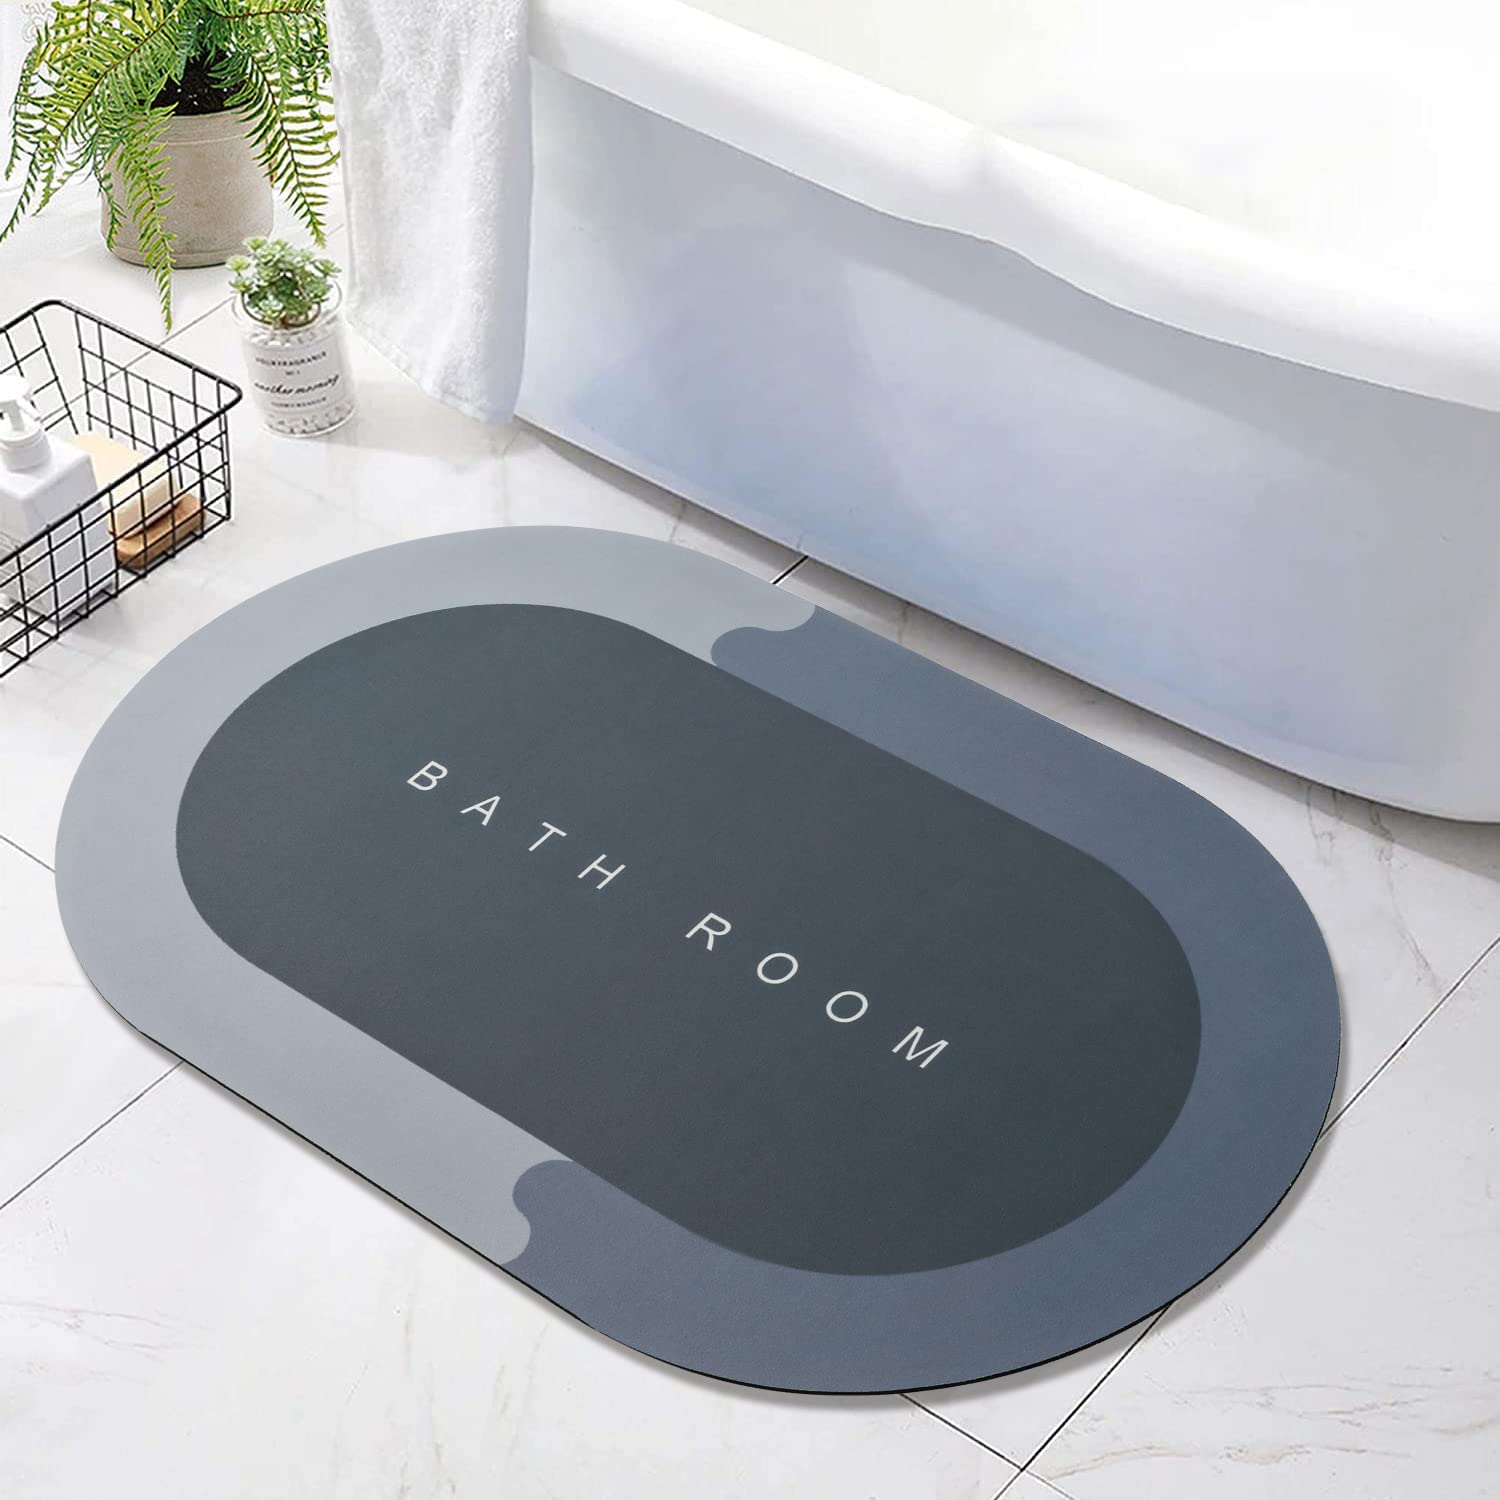 4997A  Floor Mat, Bath Mat, Doormat, Bathroom Carpet. Cushion Mat Super Absorbent Soft Carpet, Quick Dry Dirt Barrier for Home, Office DeoDap